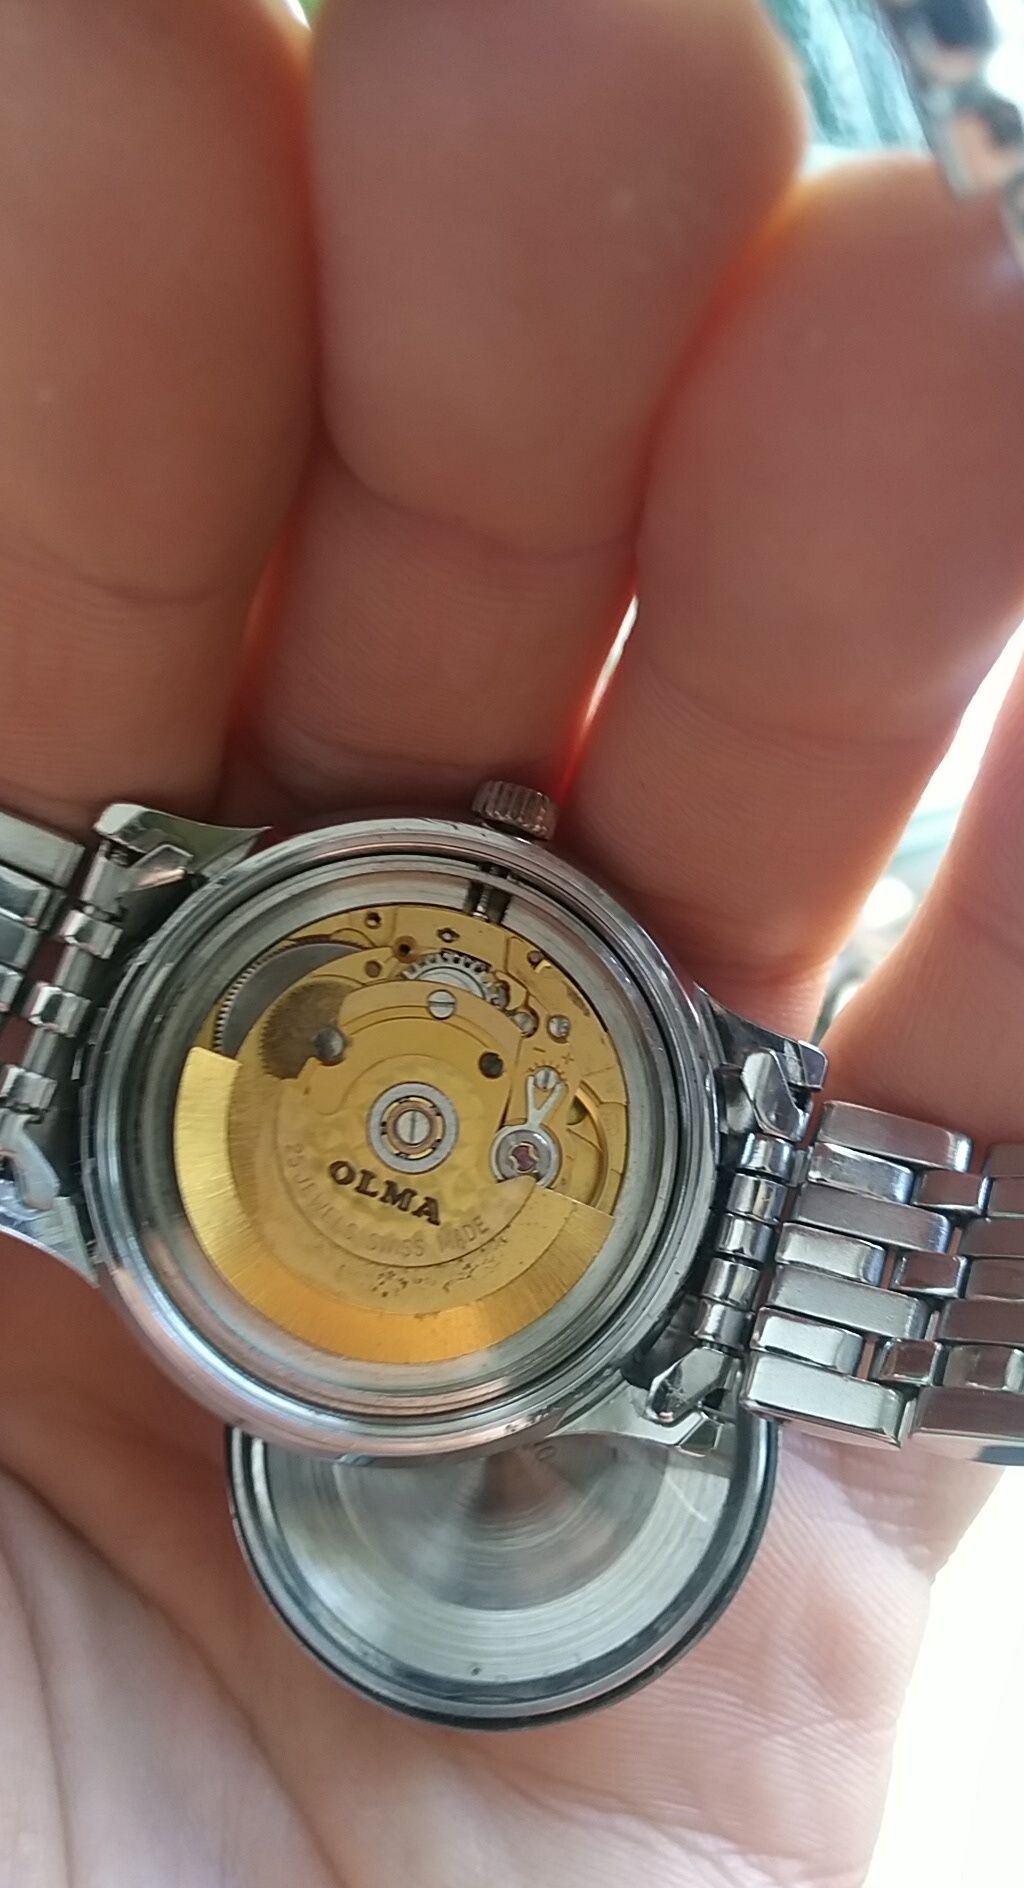 Часы швейцарские Ольма Olma с браслетом